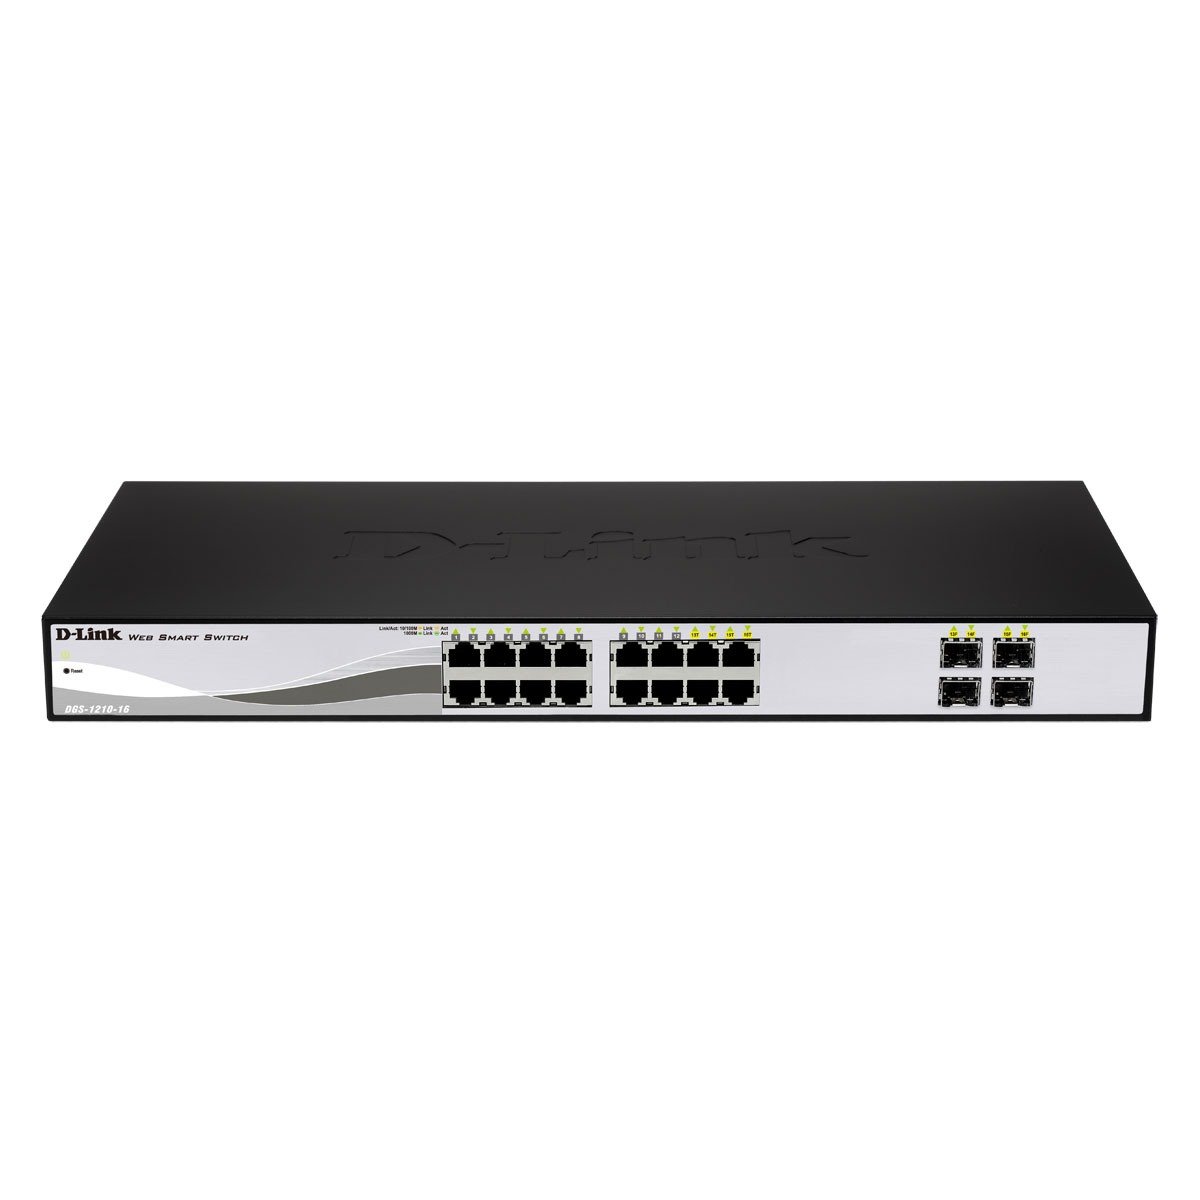 D-Link DGS-1210-16 16-Port Smart Gigabit Switch (12 x 10/100/1000 Mbit/s TP (RJ-45) Ports und 4x Mini GBIC (SFP) Slots), Schwarz